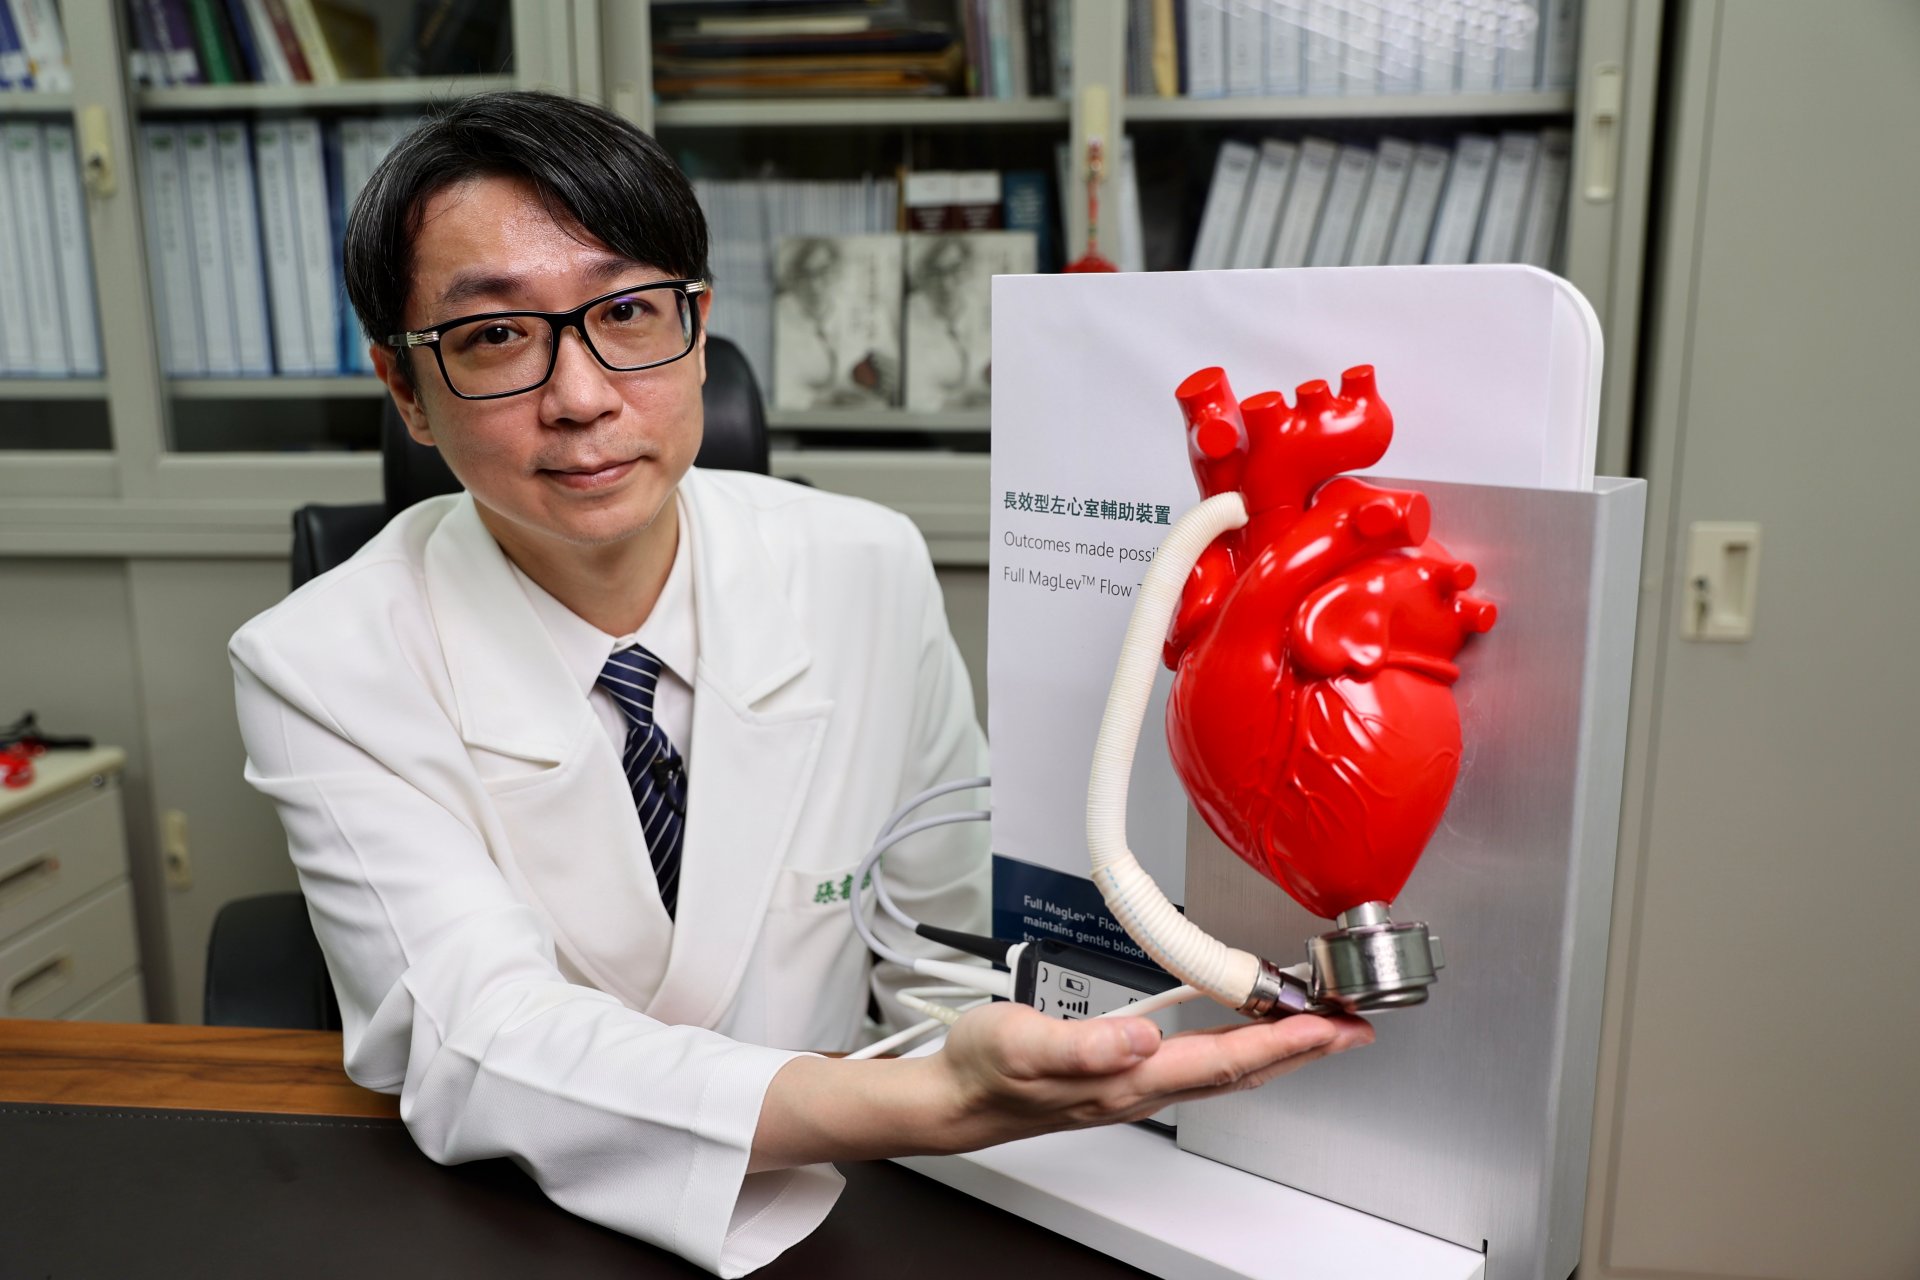 花蓮慈院外科部主任張睿智表示，長效型心室輔助器是將磁浮式馬達安裝於心臟上，以人工血管將血液引流到主動脈上進而傳遞到全身，並透過一條電極訊號線路連接到體外的儀器電池上，維持馬達運轉取代心臟的功能。